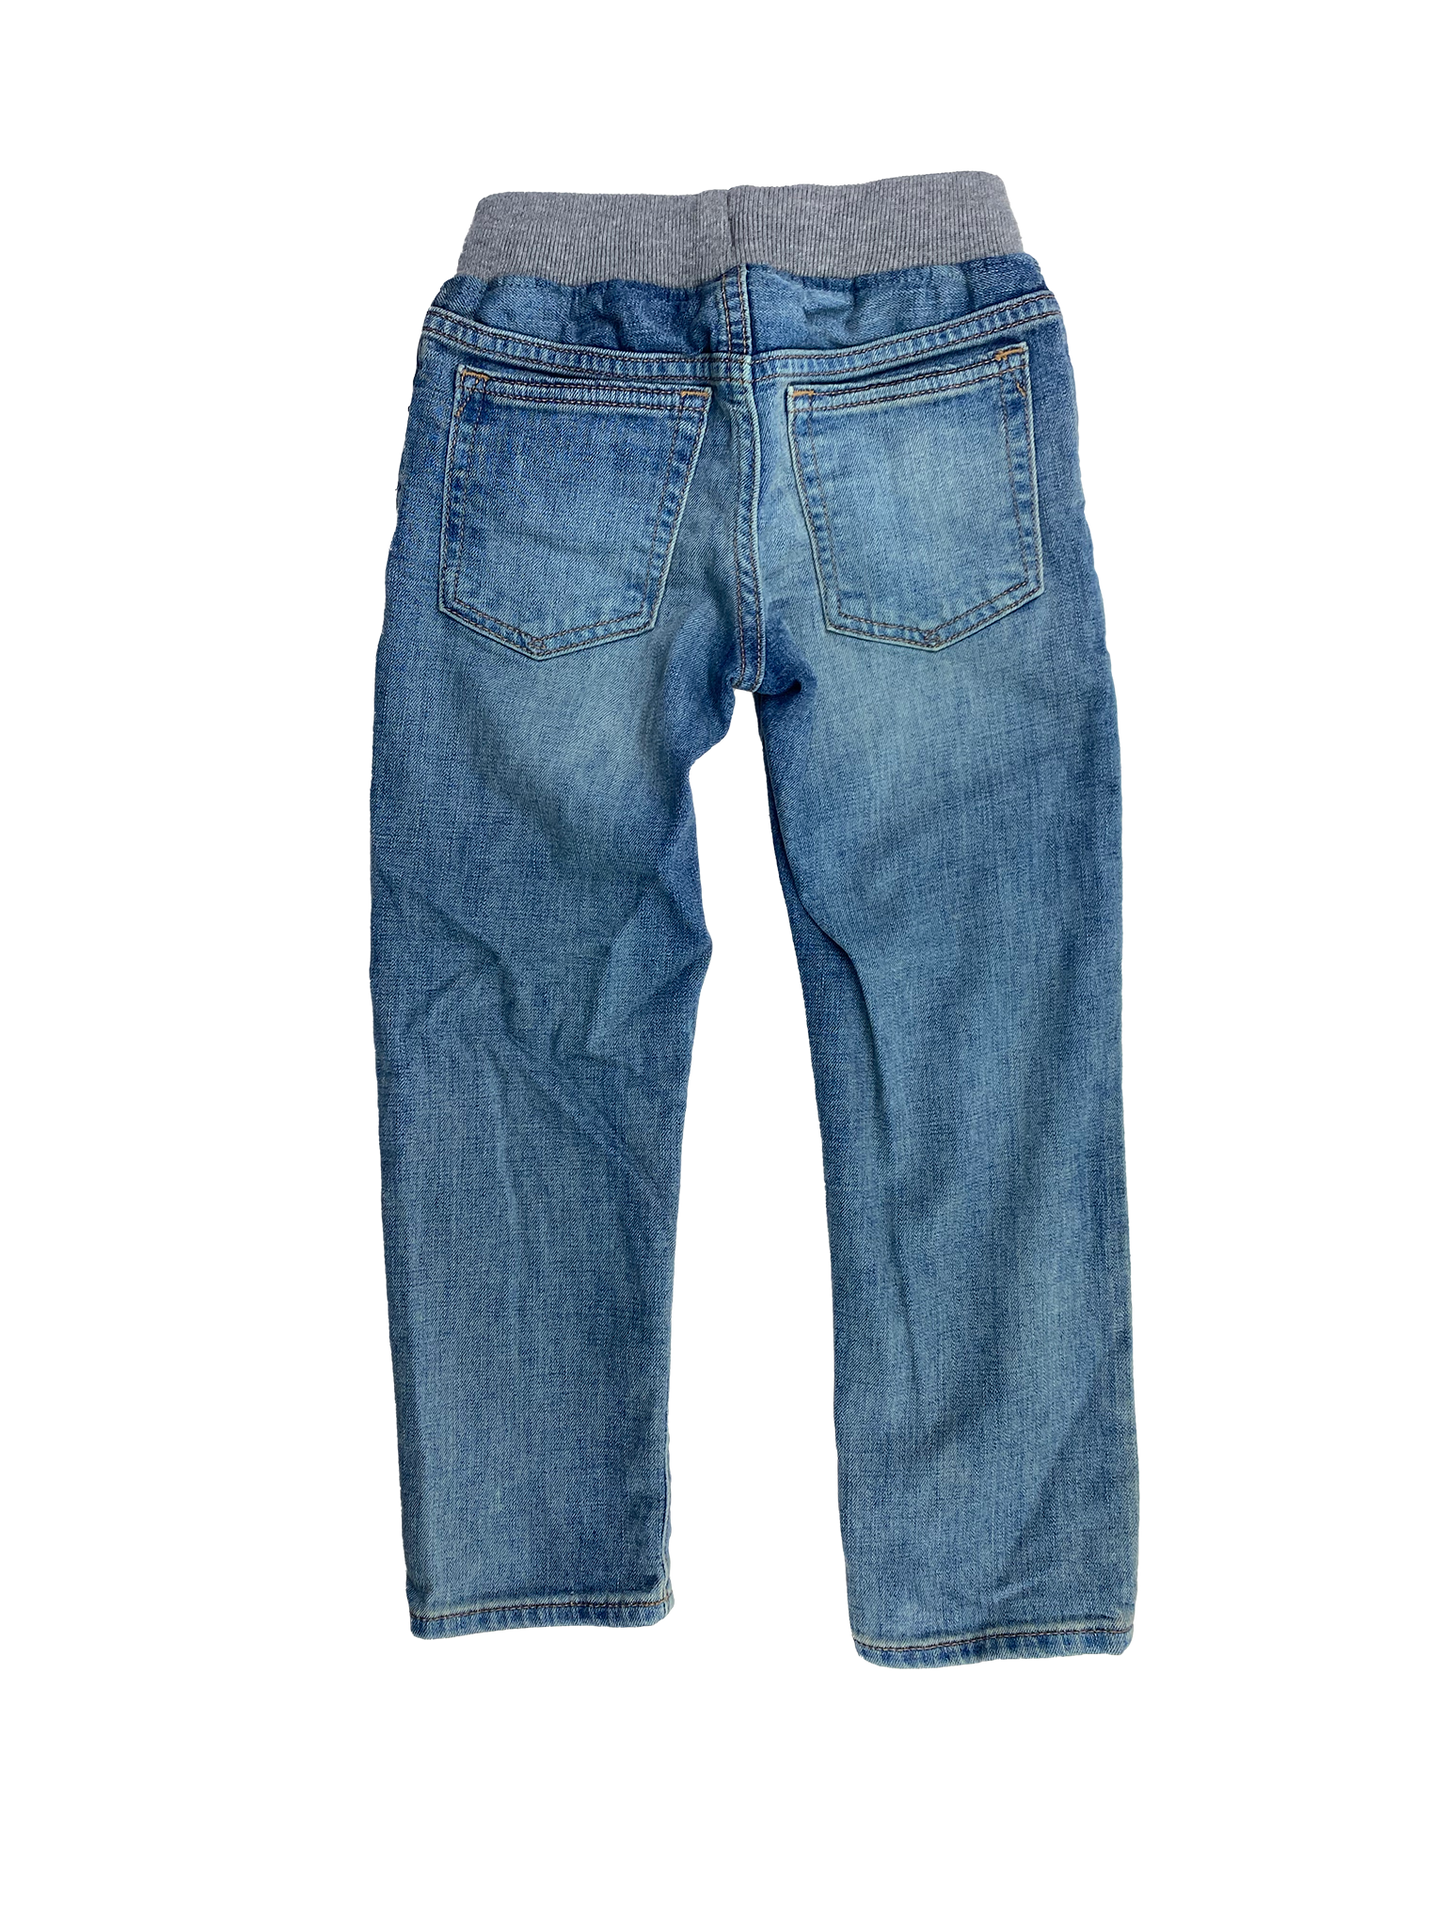 Gap Slim Leg Medium Wash Jeans 5T